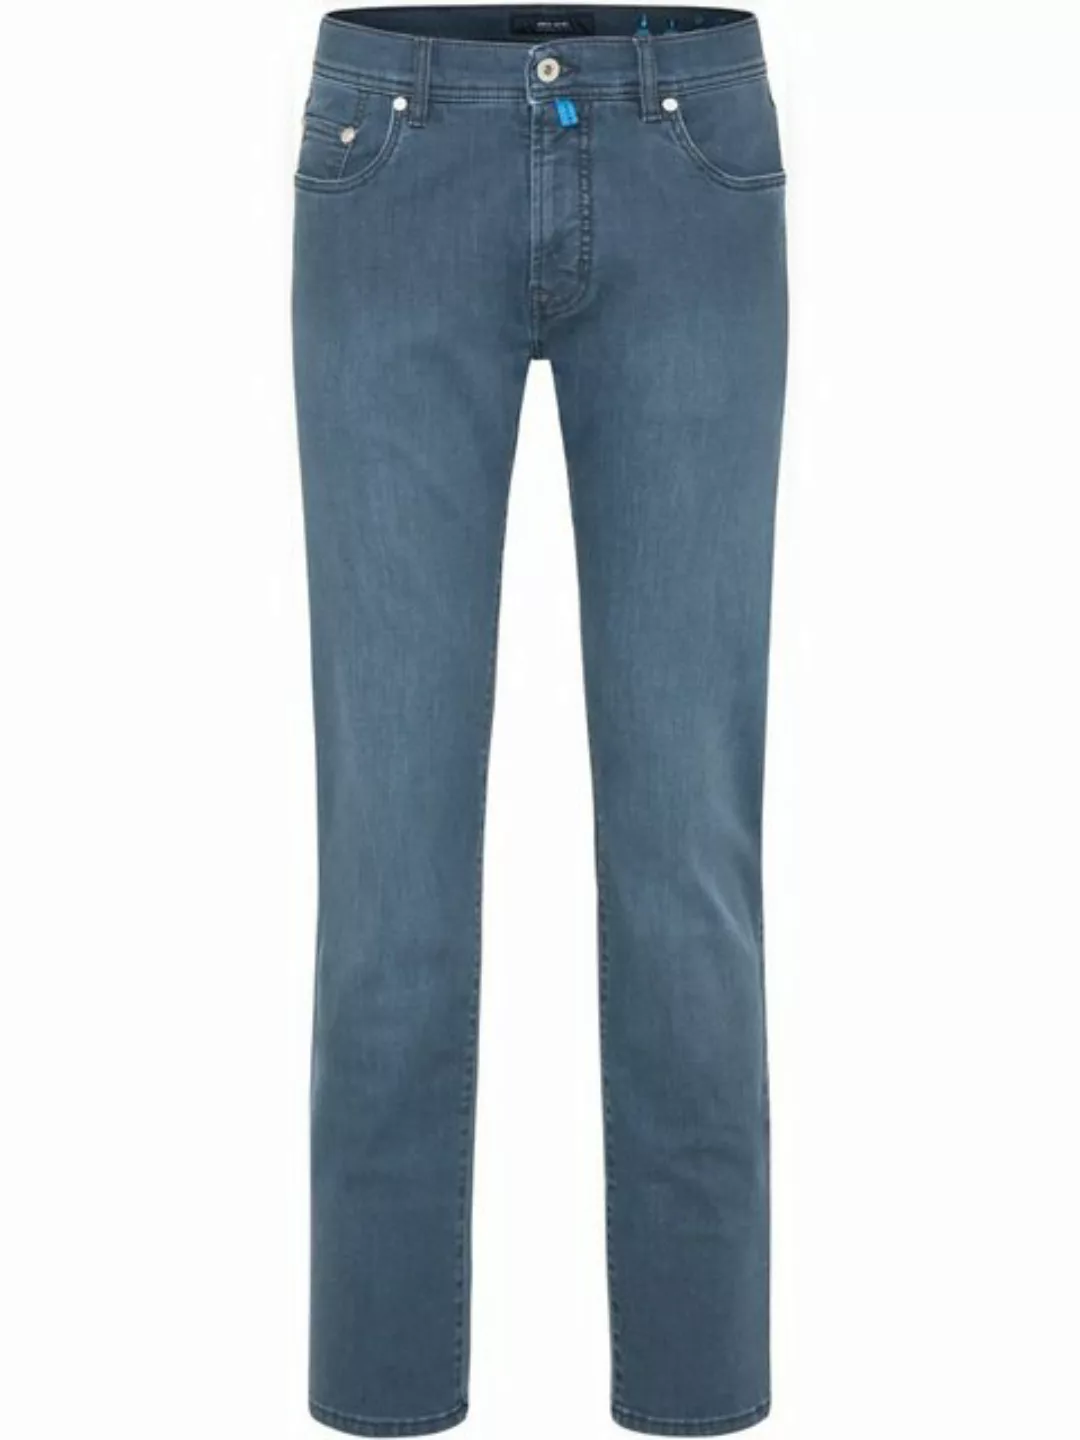 Pierre Cardin 5-Pocket-Jeans PIERRE CARDIN LYON washed out dusty blue 30915 günstig online kaufen